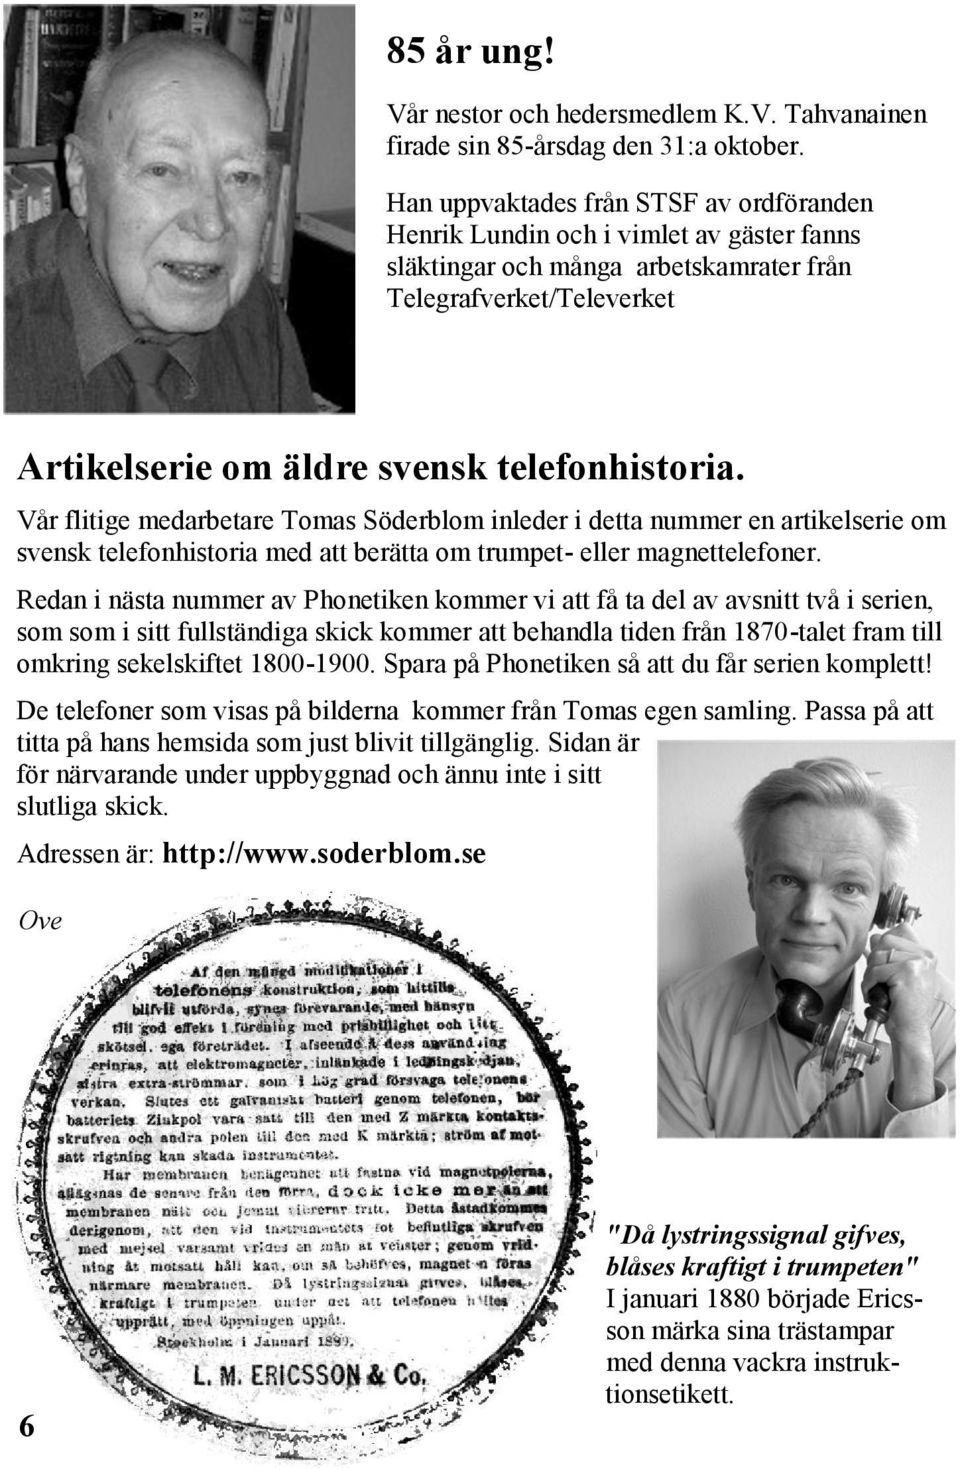 Vår flitige medarbetare Tomas Söderblom inleder i detta nummer en artikelserie om svensk telefonhistoria med att berätta om trumpet- eller magnettelefoner.